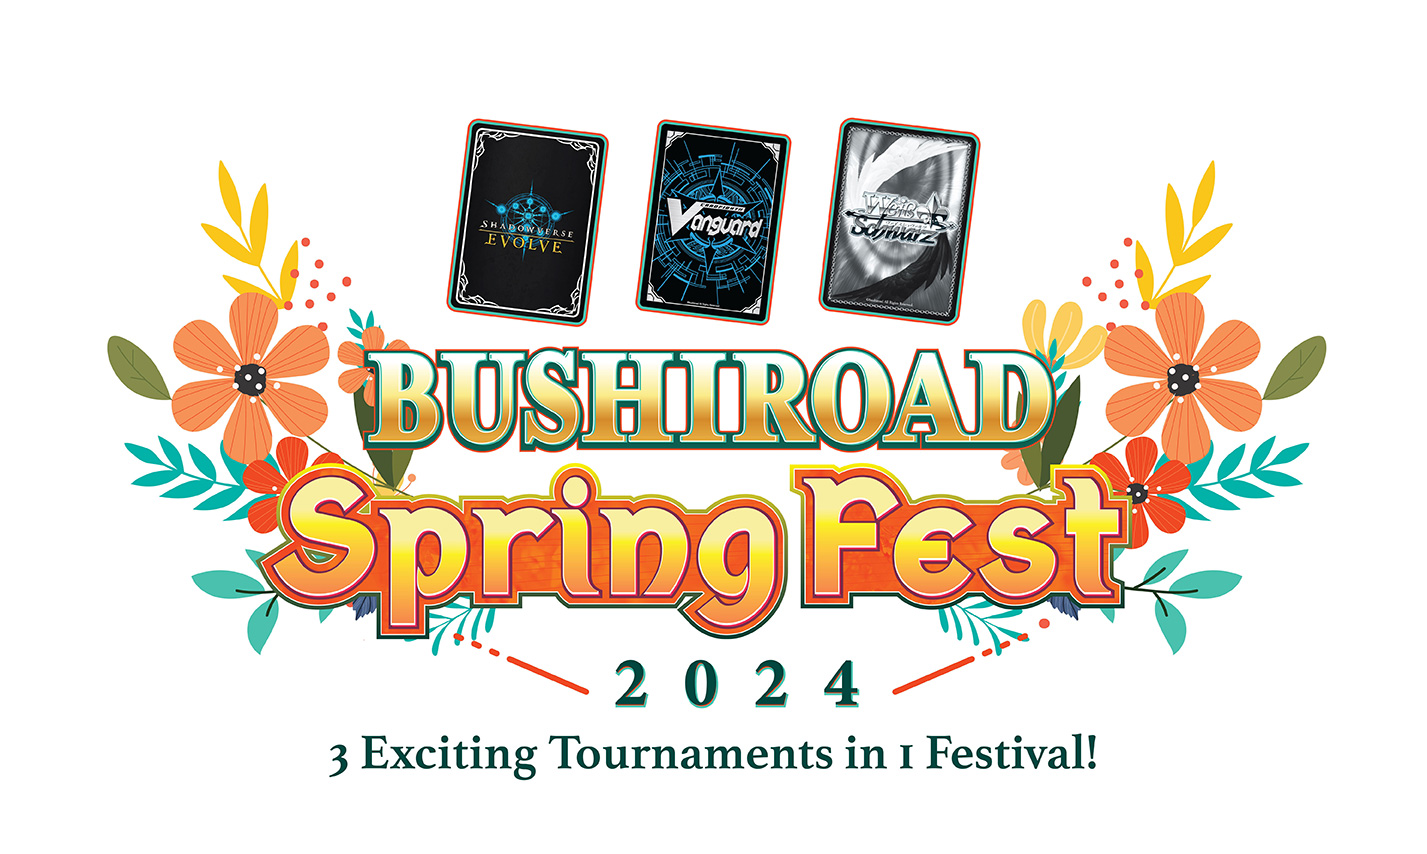 Bushiroad Spring Fest 2024